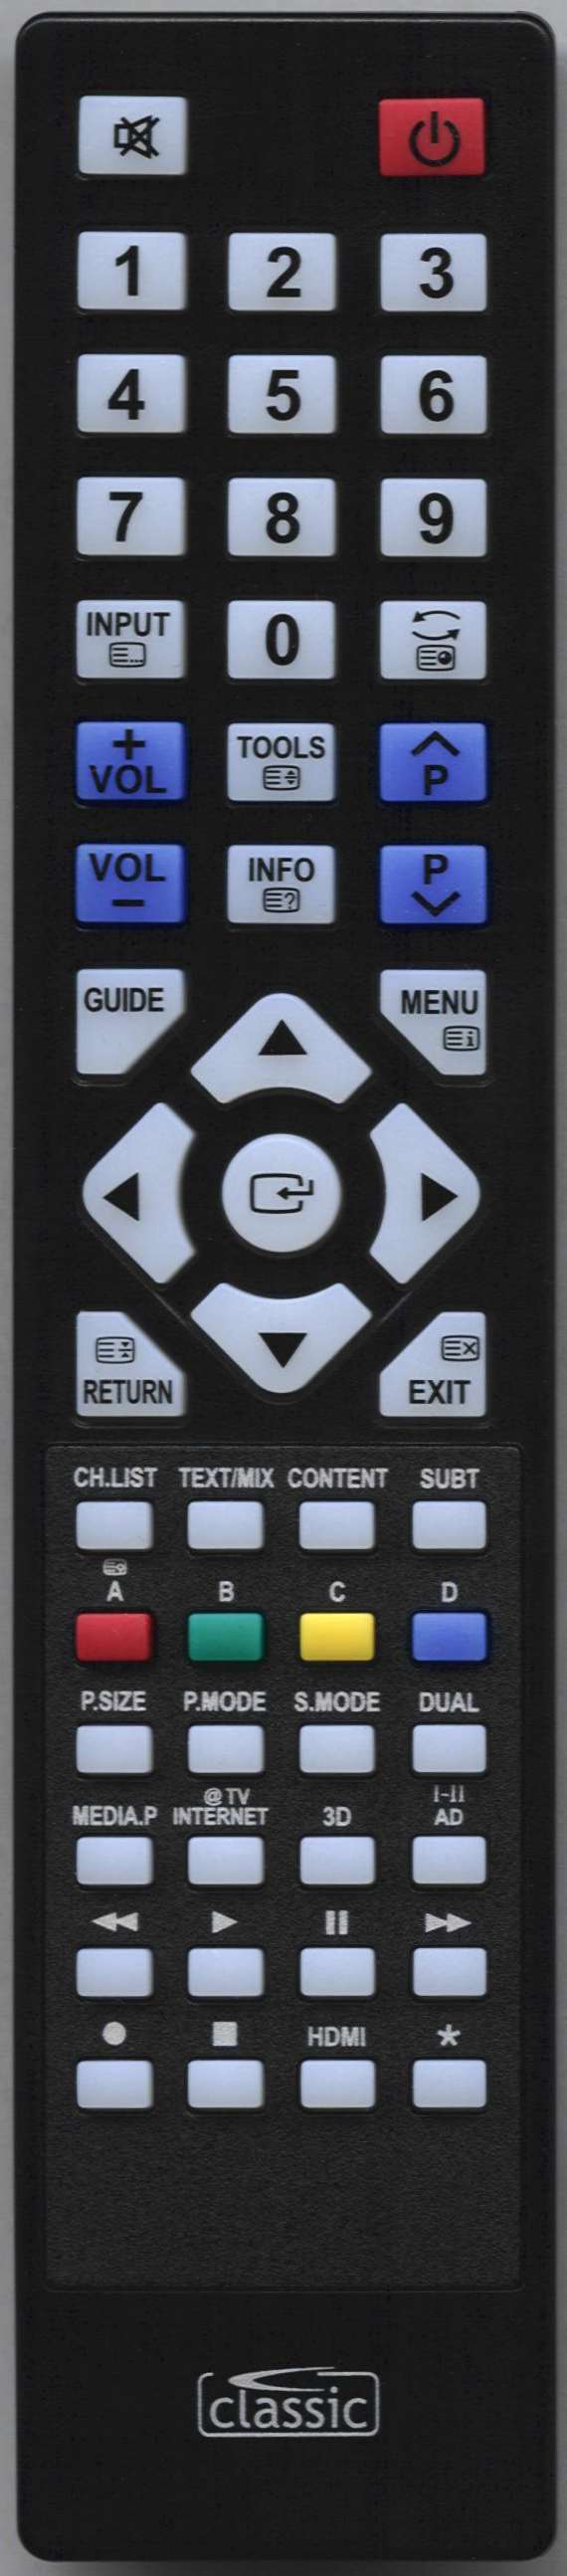 SAMSUNG PS50C6500TMXXV Remote Control